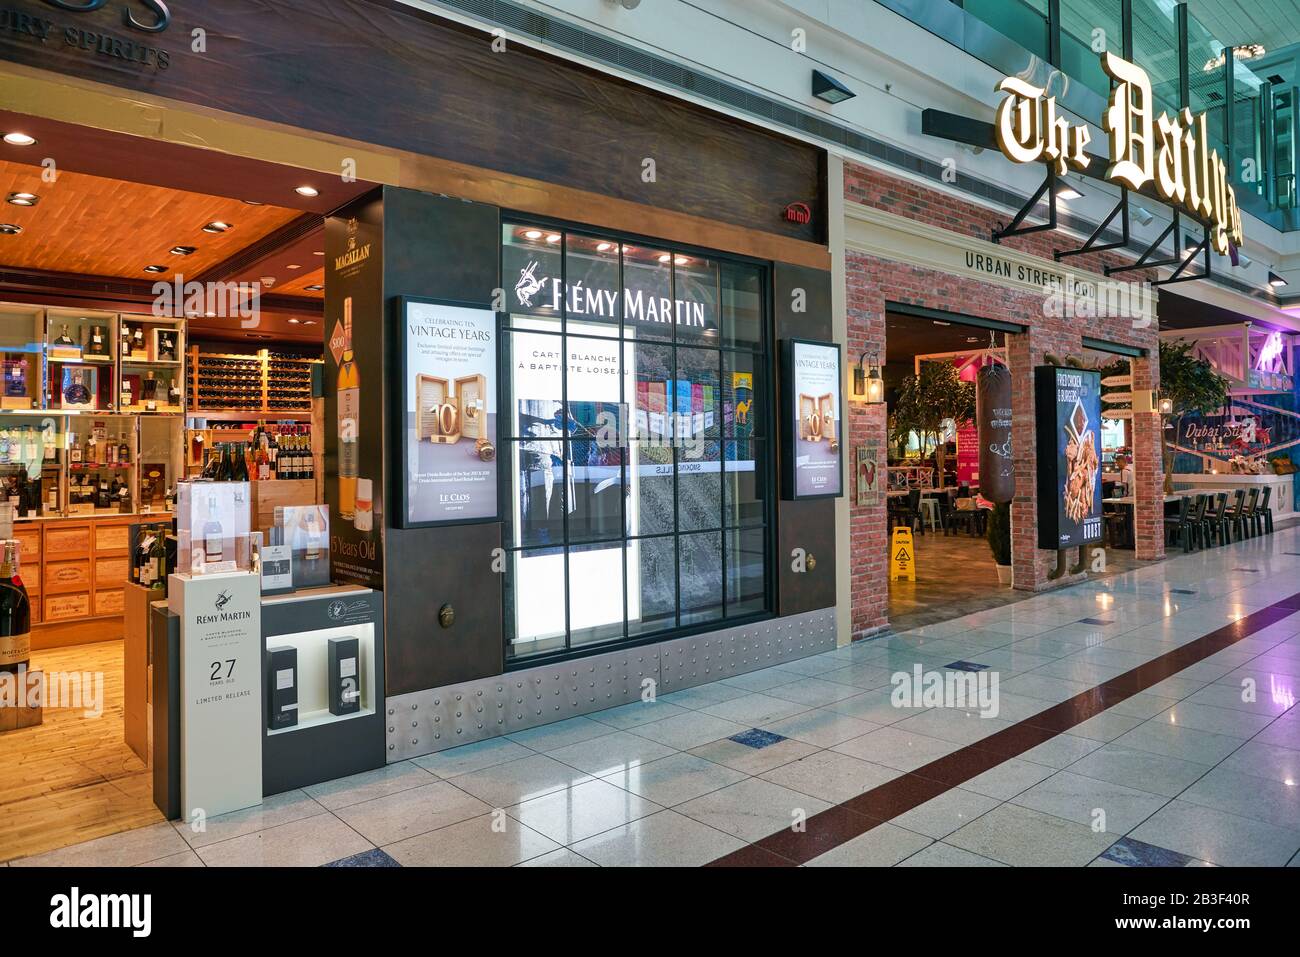 Dubai, VAE - CIRCA JANUAR 2019: Le Clos Storefront im Dubai International Airport. Le Clos ist der beste Wein- und Luxuswarenhändler für Spirituosen Stockfoto